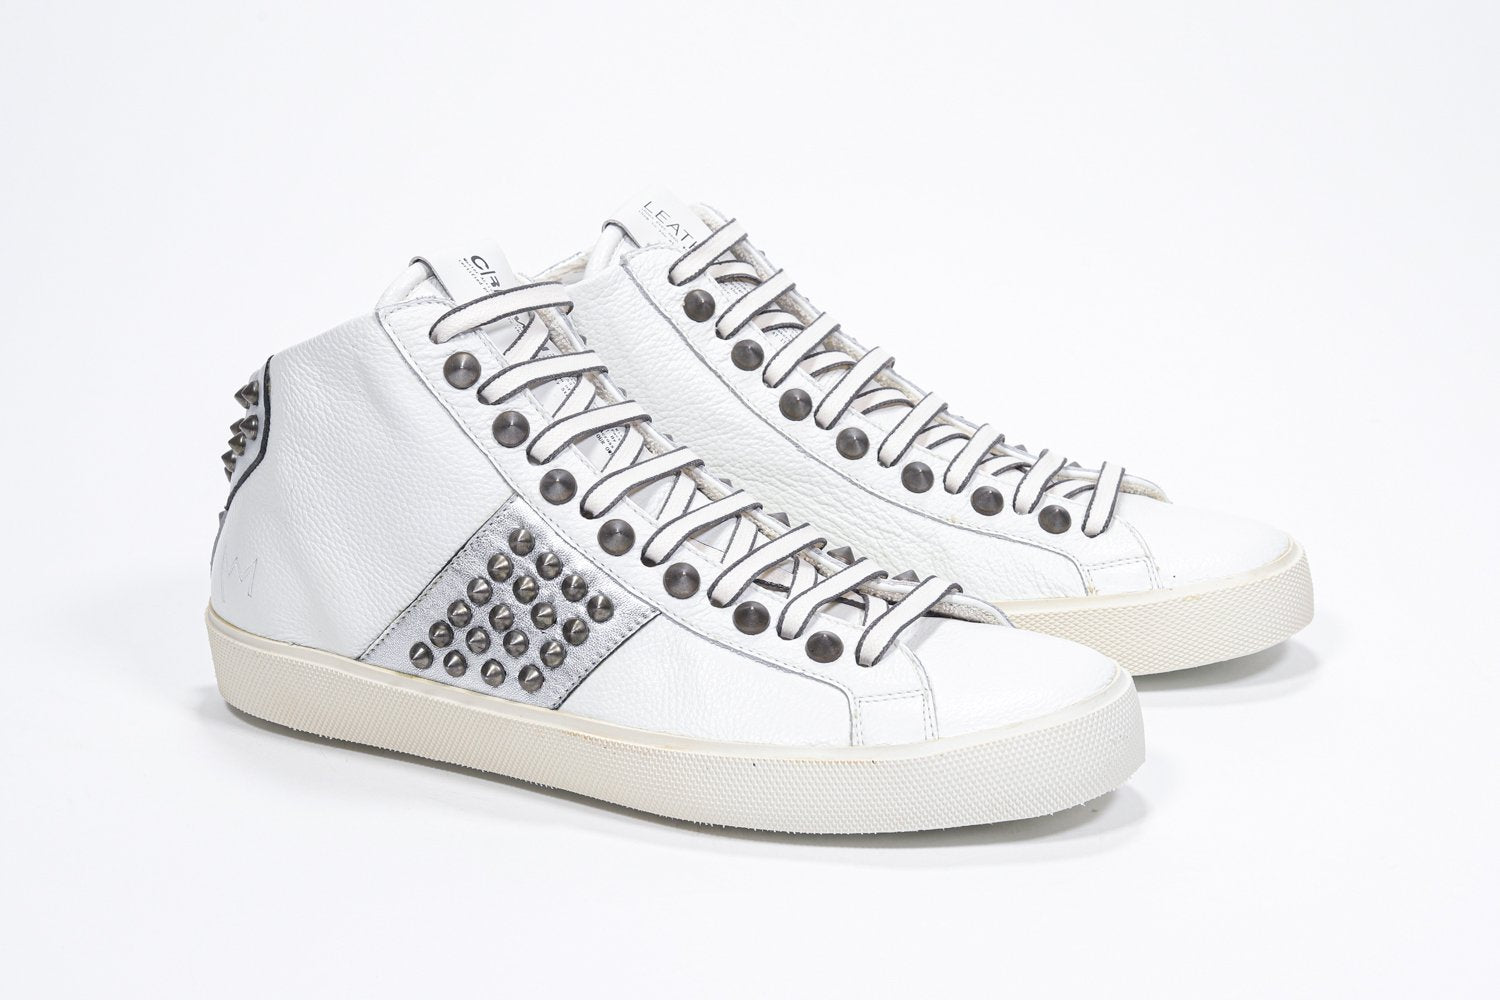 Tre quarti di un modello mid top bianco e argento metallizzato sneaker. Tomaia in pelle con borchie, zip interna e suola in gomma vintage.